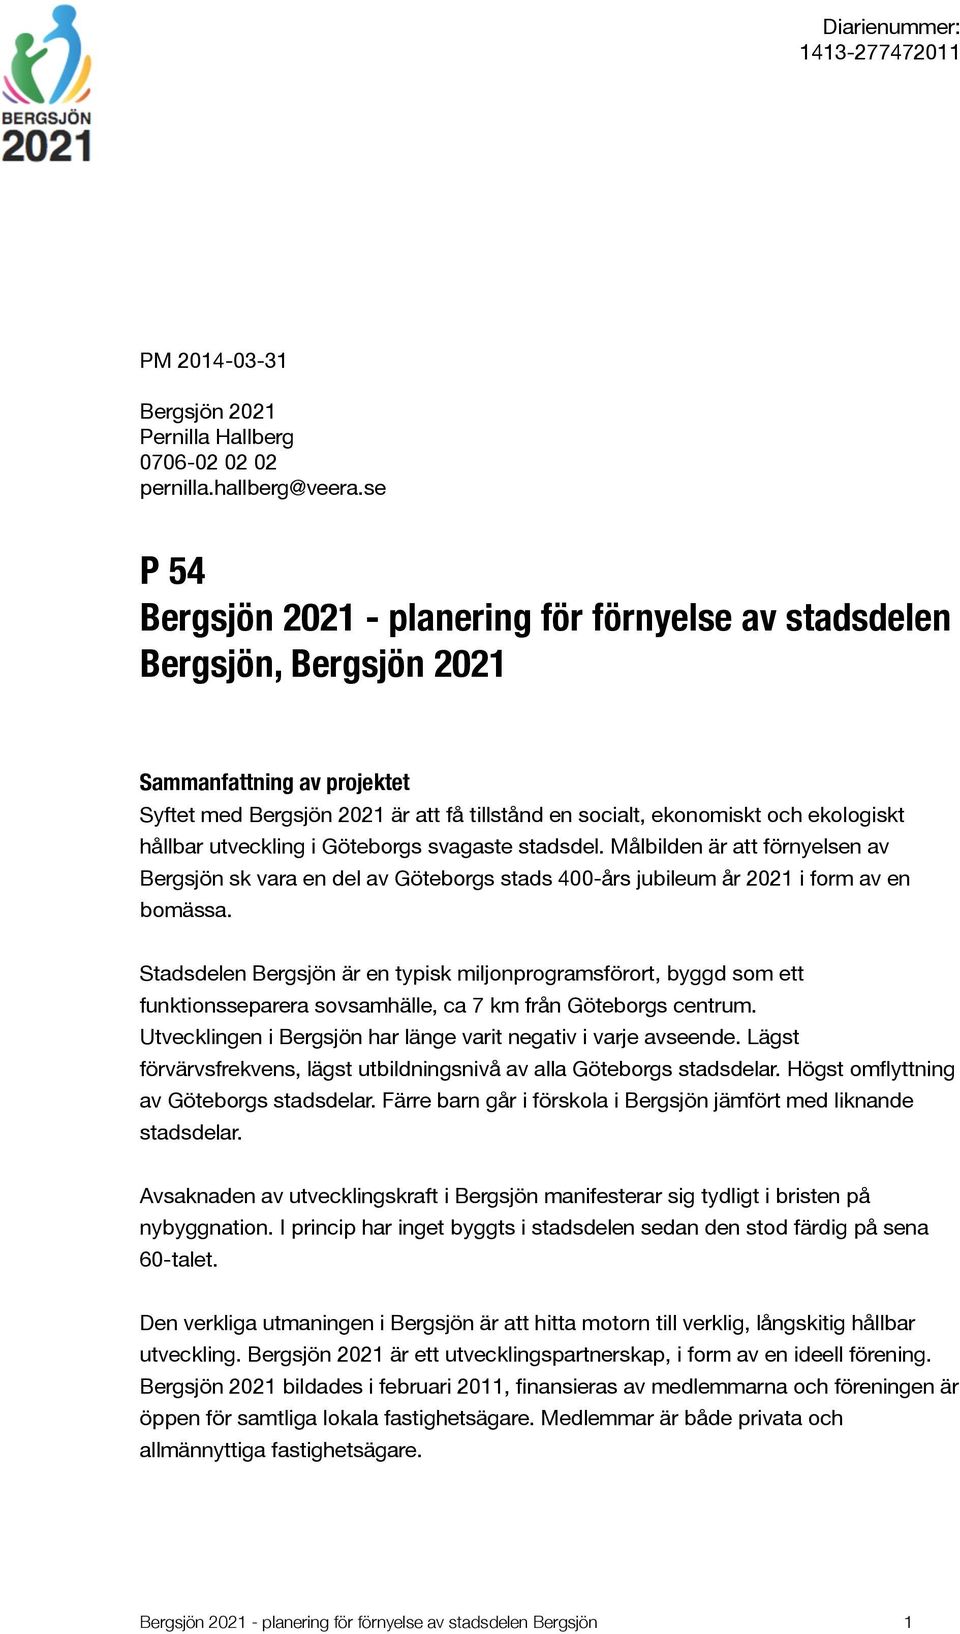 hållbar utveckling i Göteborgs svagaste stadsdel. Målbilden är att förnyelsen av Bergsjön sk vara en del av Göteborgs stads 400-års jubileum år 2021 i form av en bomässa.